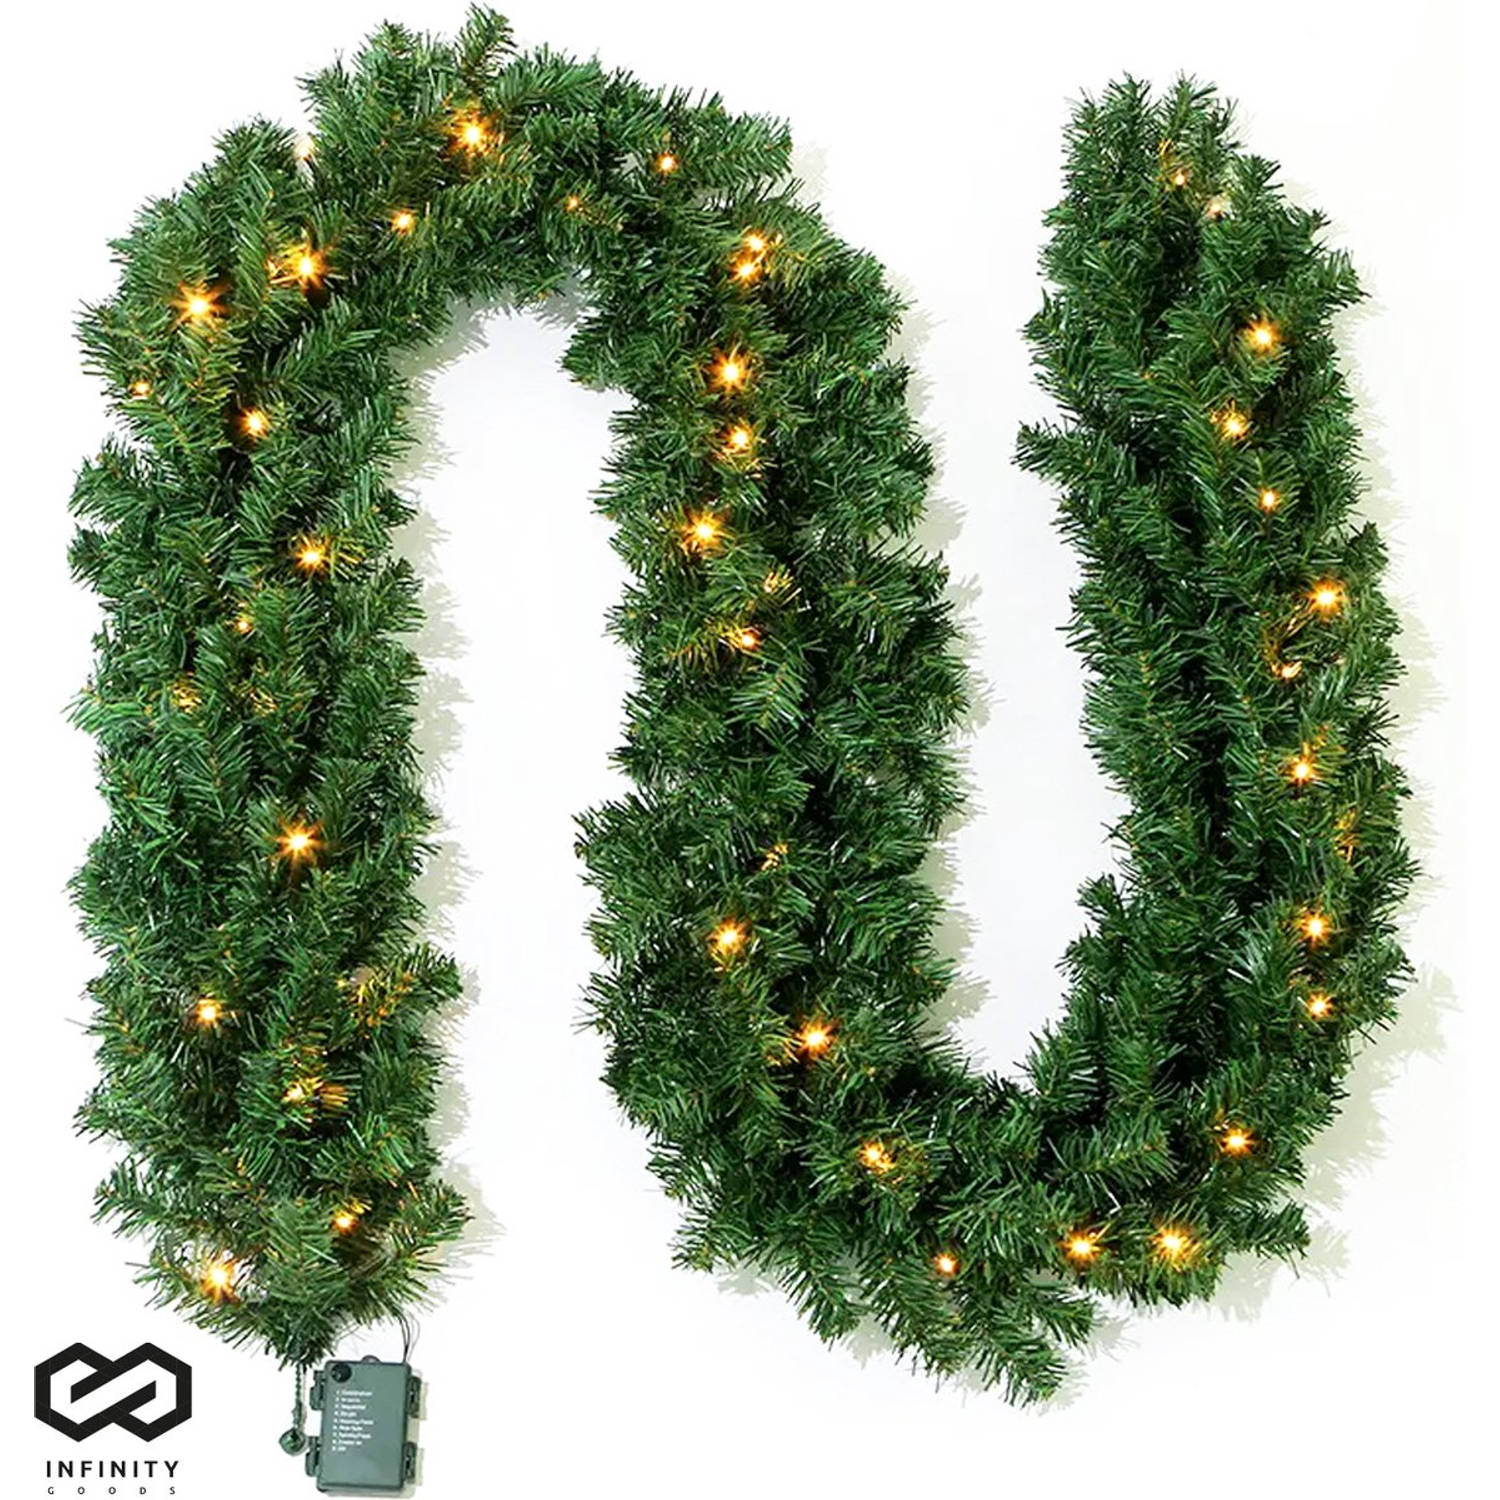 Infinity Goods Guirlande Met verlichting - Timer - Kerstversiering - 270CM - Kerstslinger - Kerstdecoratie - 35 LED - Groen